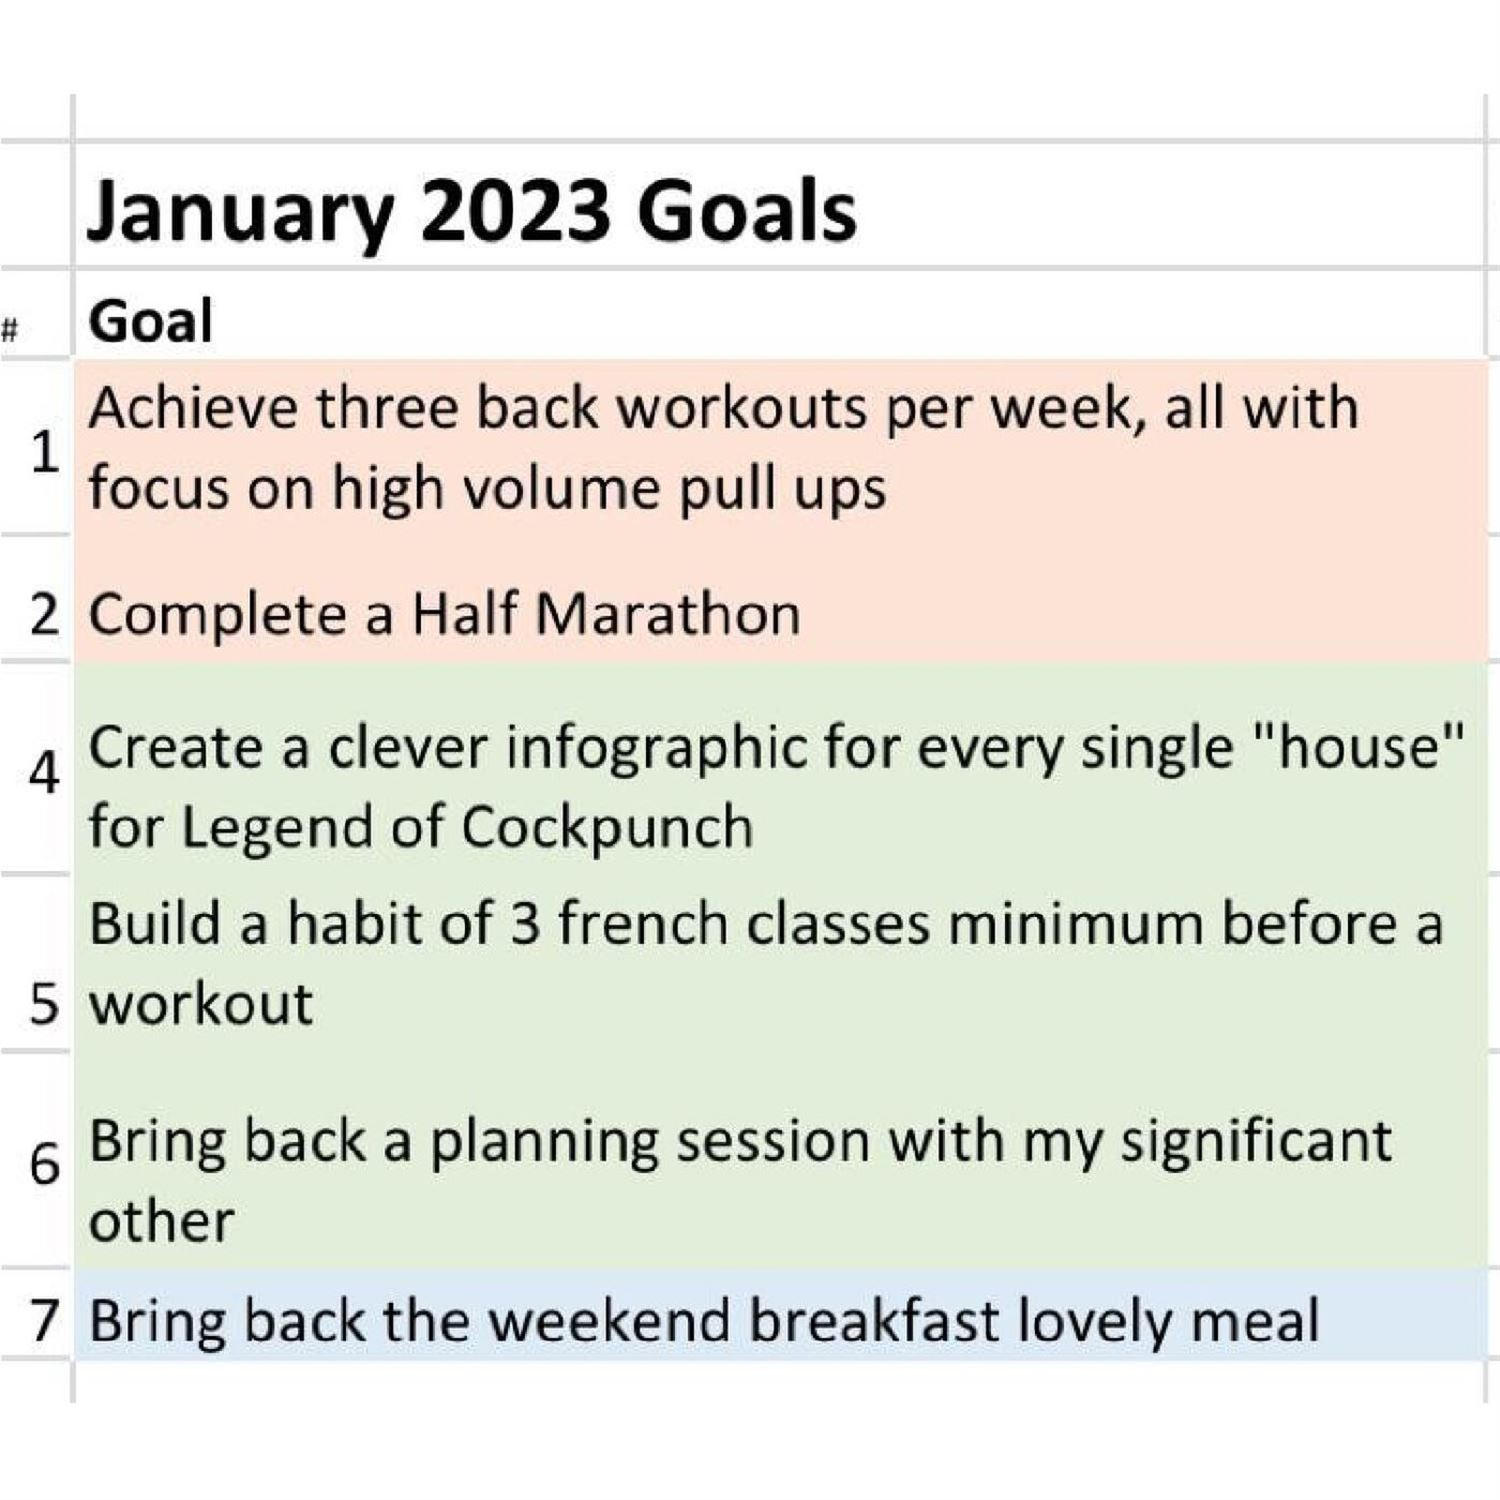 Juan's January 2023 goals